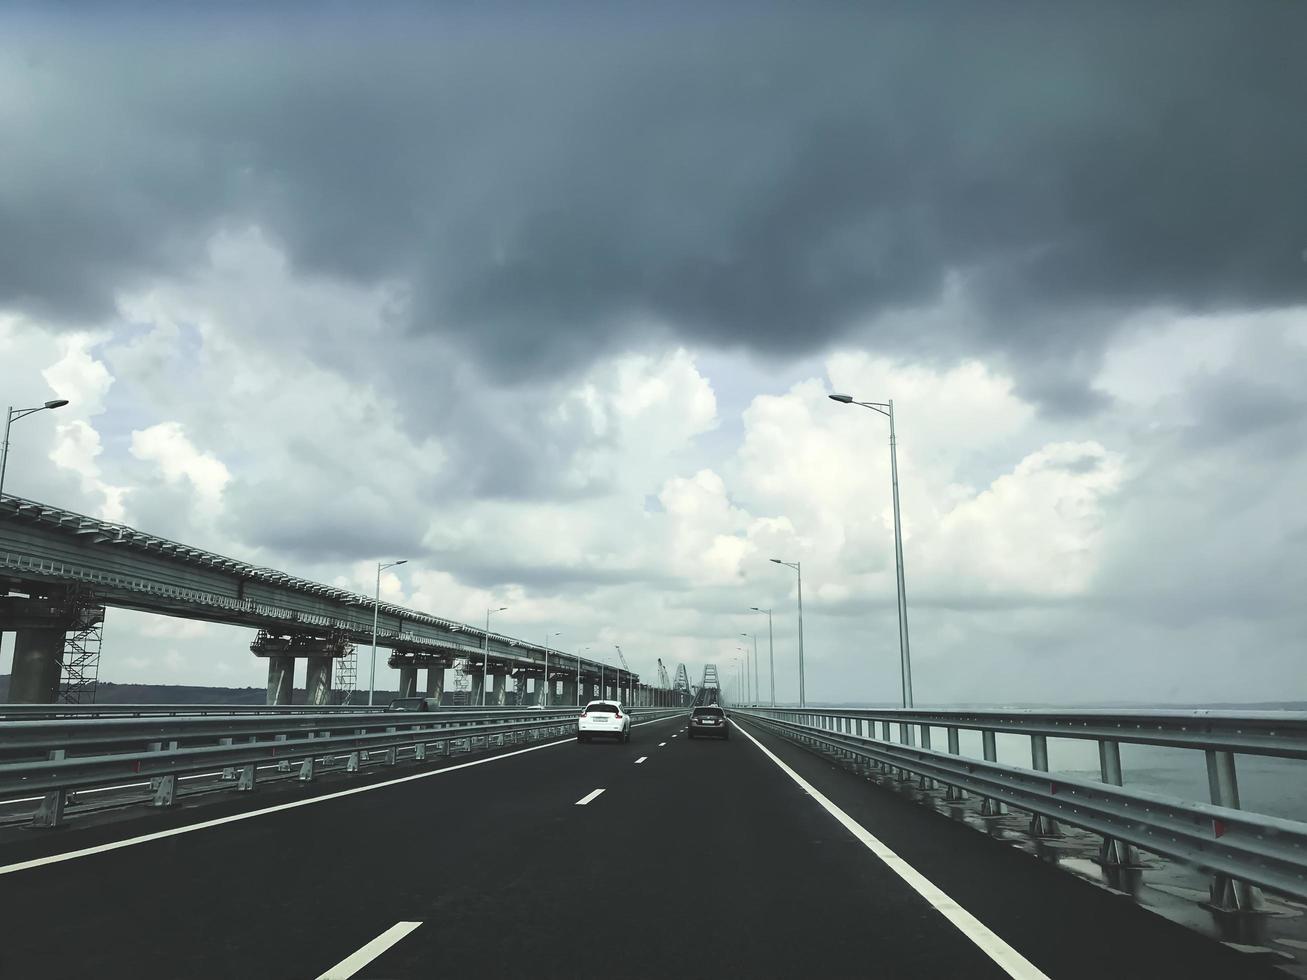 ponte da criméia. nova rodovia na ponte com tráfego descarregado foto